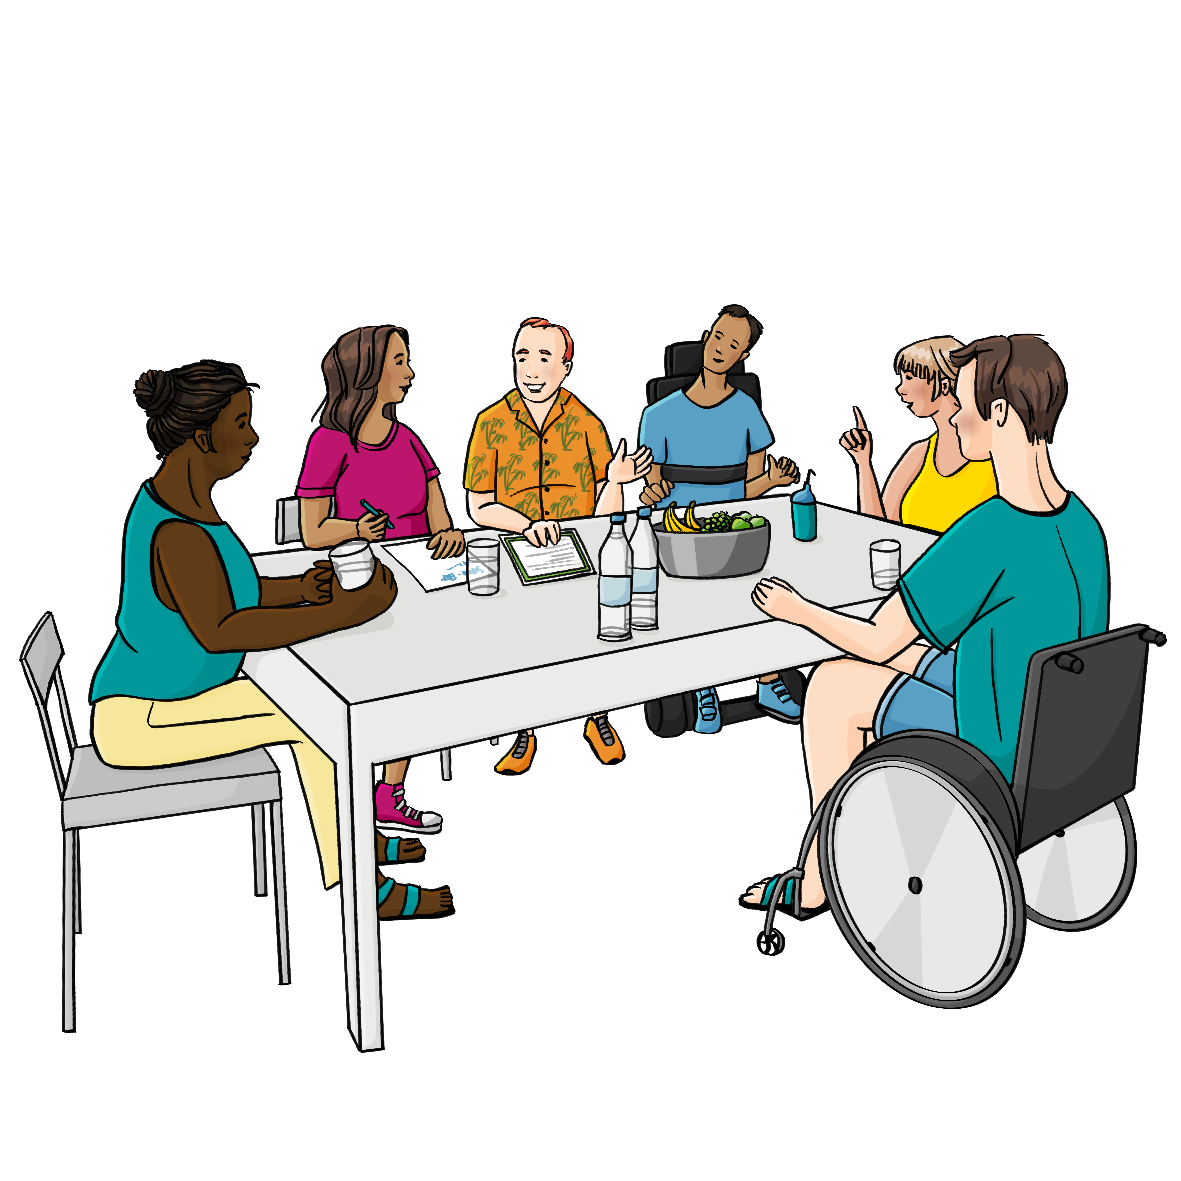 Eine Gruppe Menschen mit verschiedenen Behinderungen sitzt um einen Tisch herum. Auf dem Tisch stehen Wasserflaschen und eine Schüssel mit Obst. Einer der Männer zeigt auf ein Blatt Papier. Eine der Frauen schreibt etwas auf.